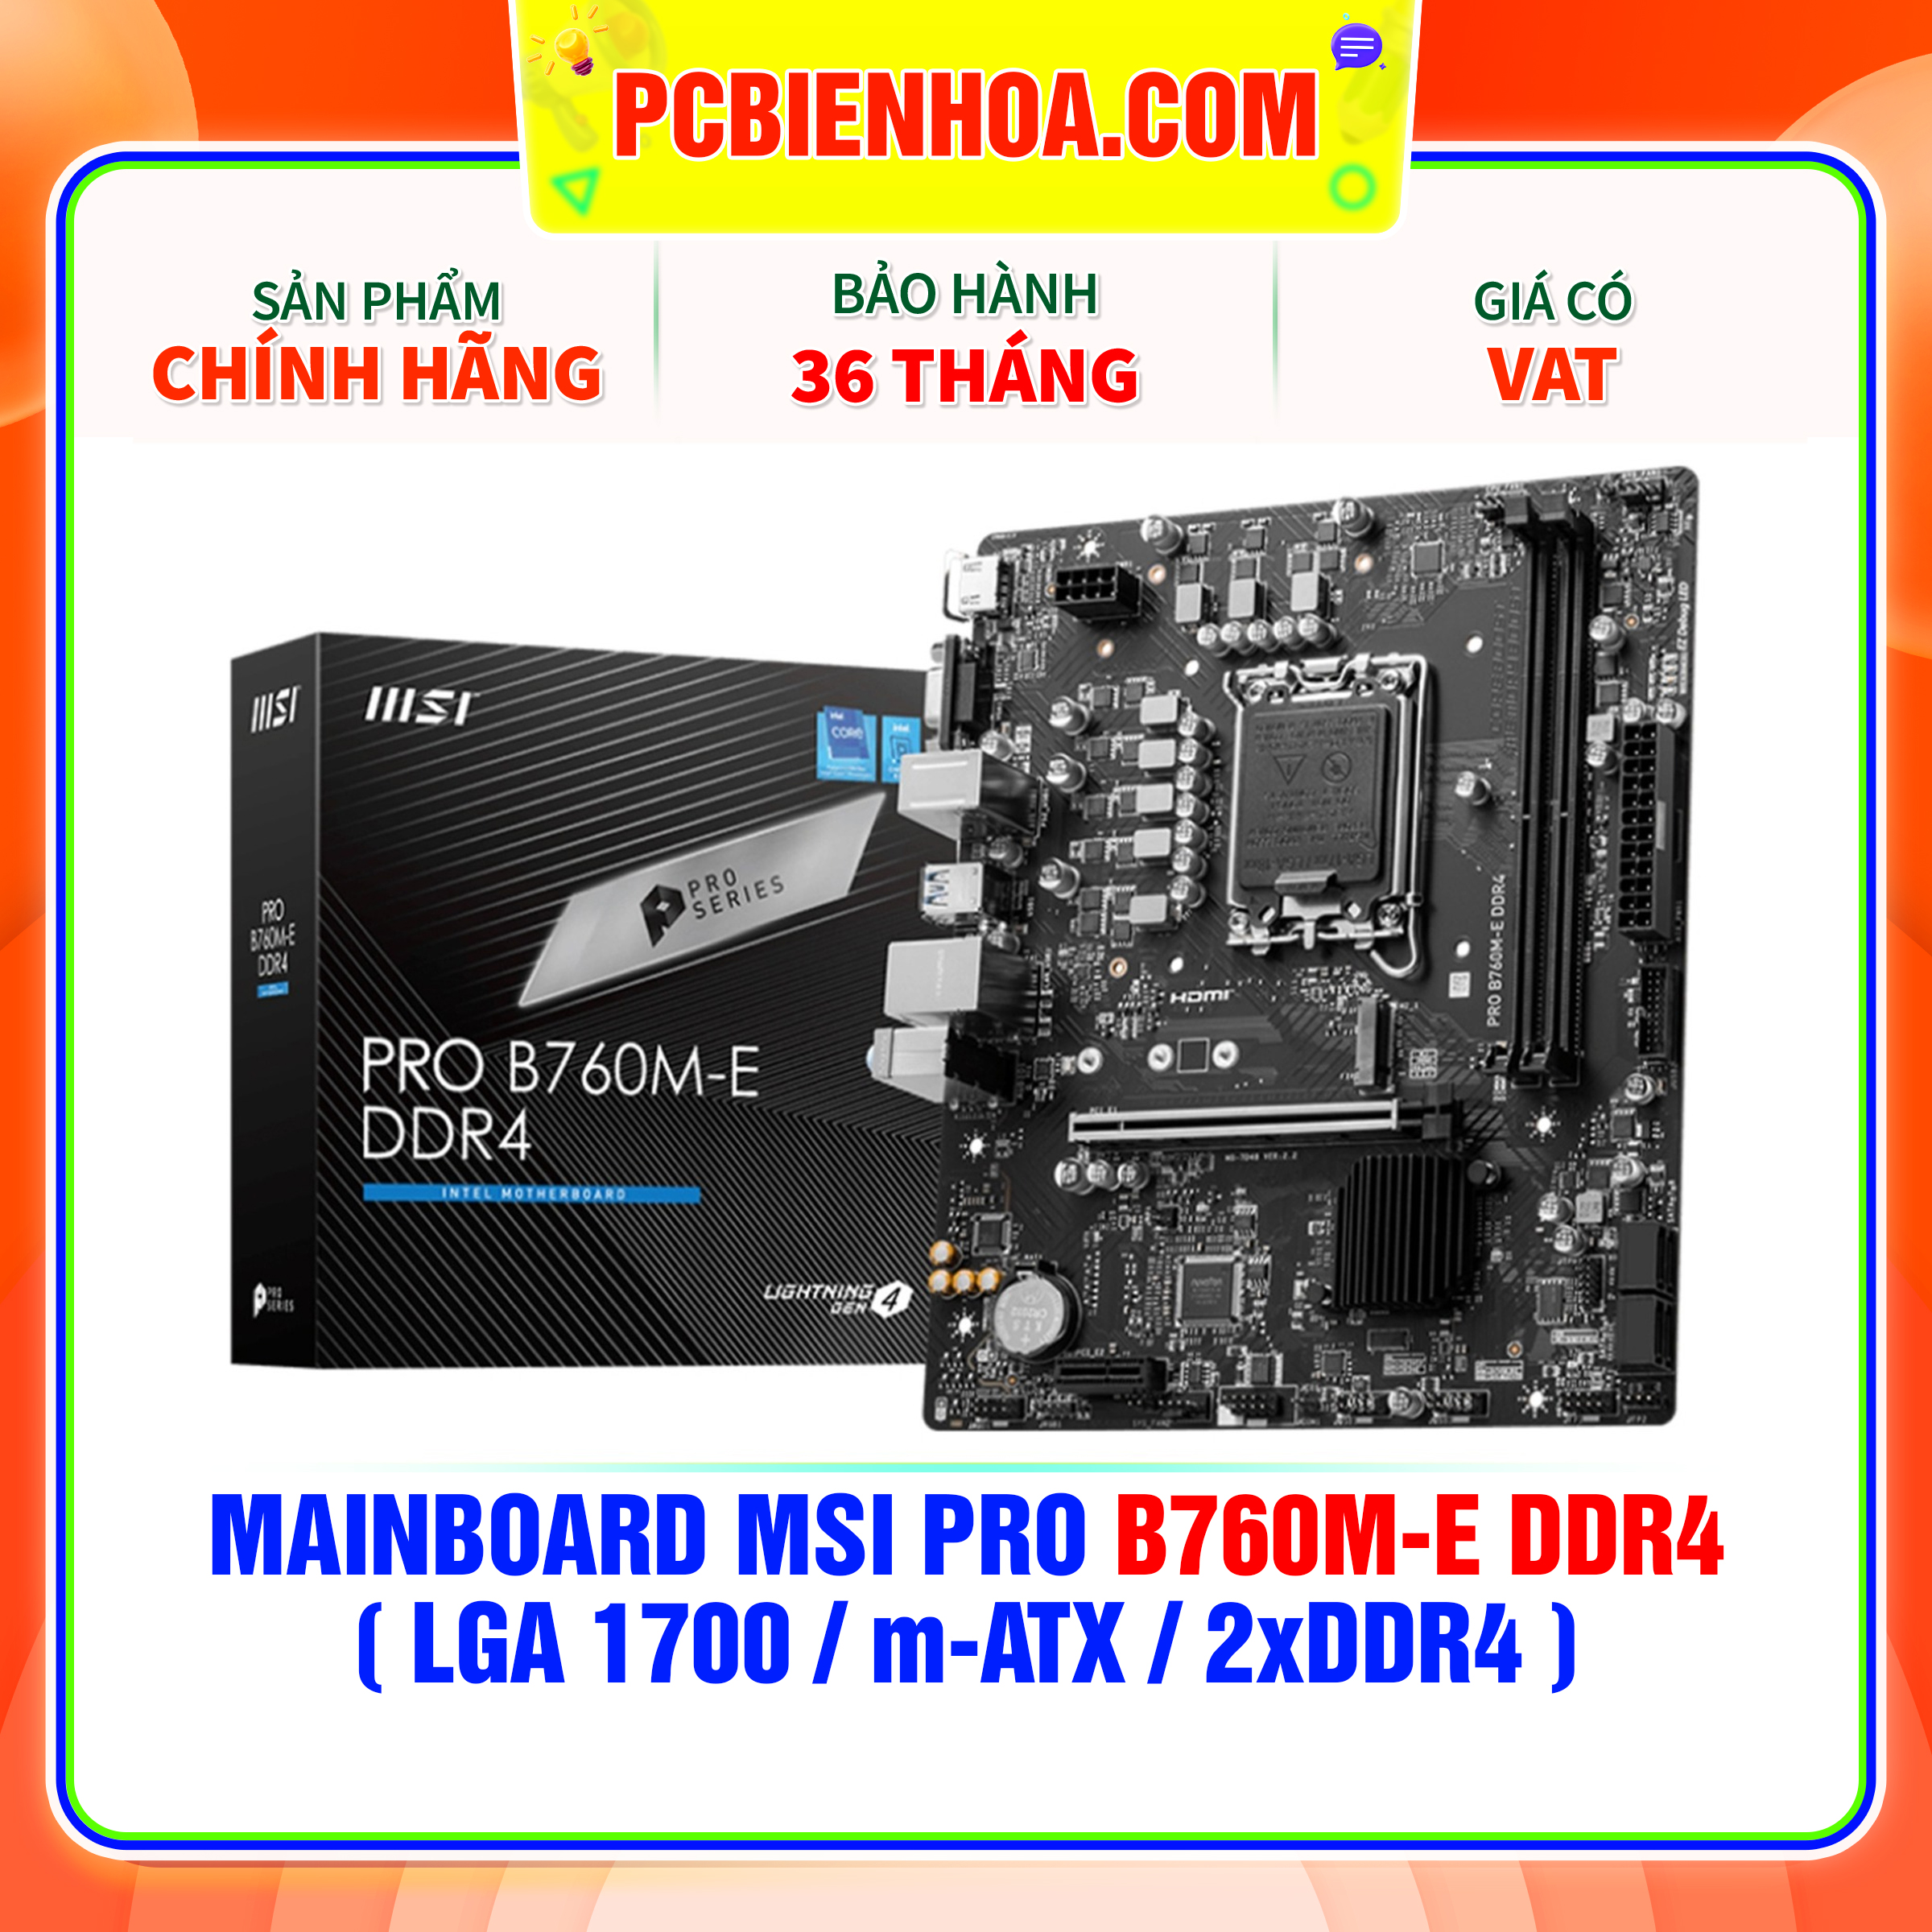 MAINBOARD MSI PRO B760M-E DDR4  LGA 1700 m-ATX 2xDDR4